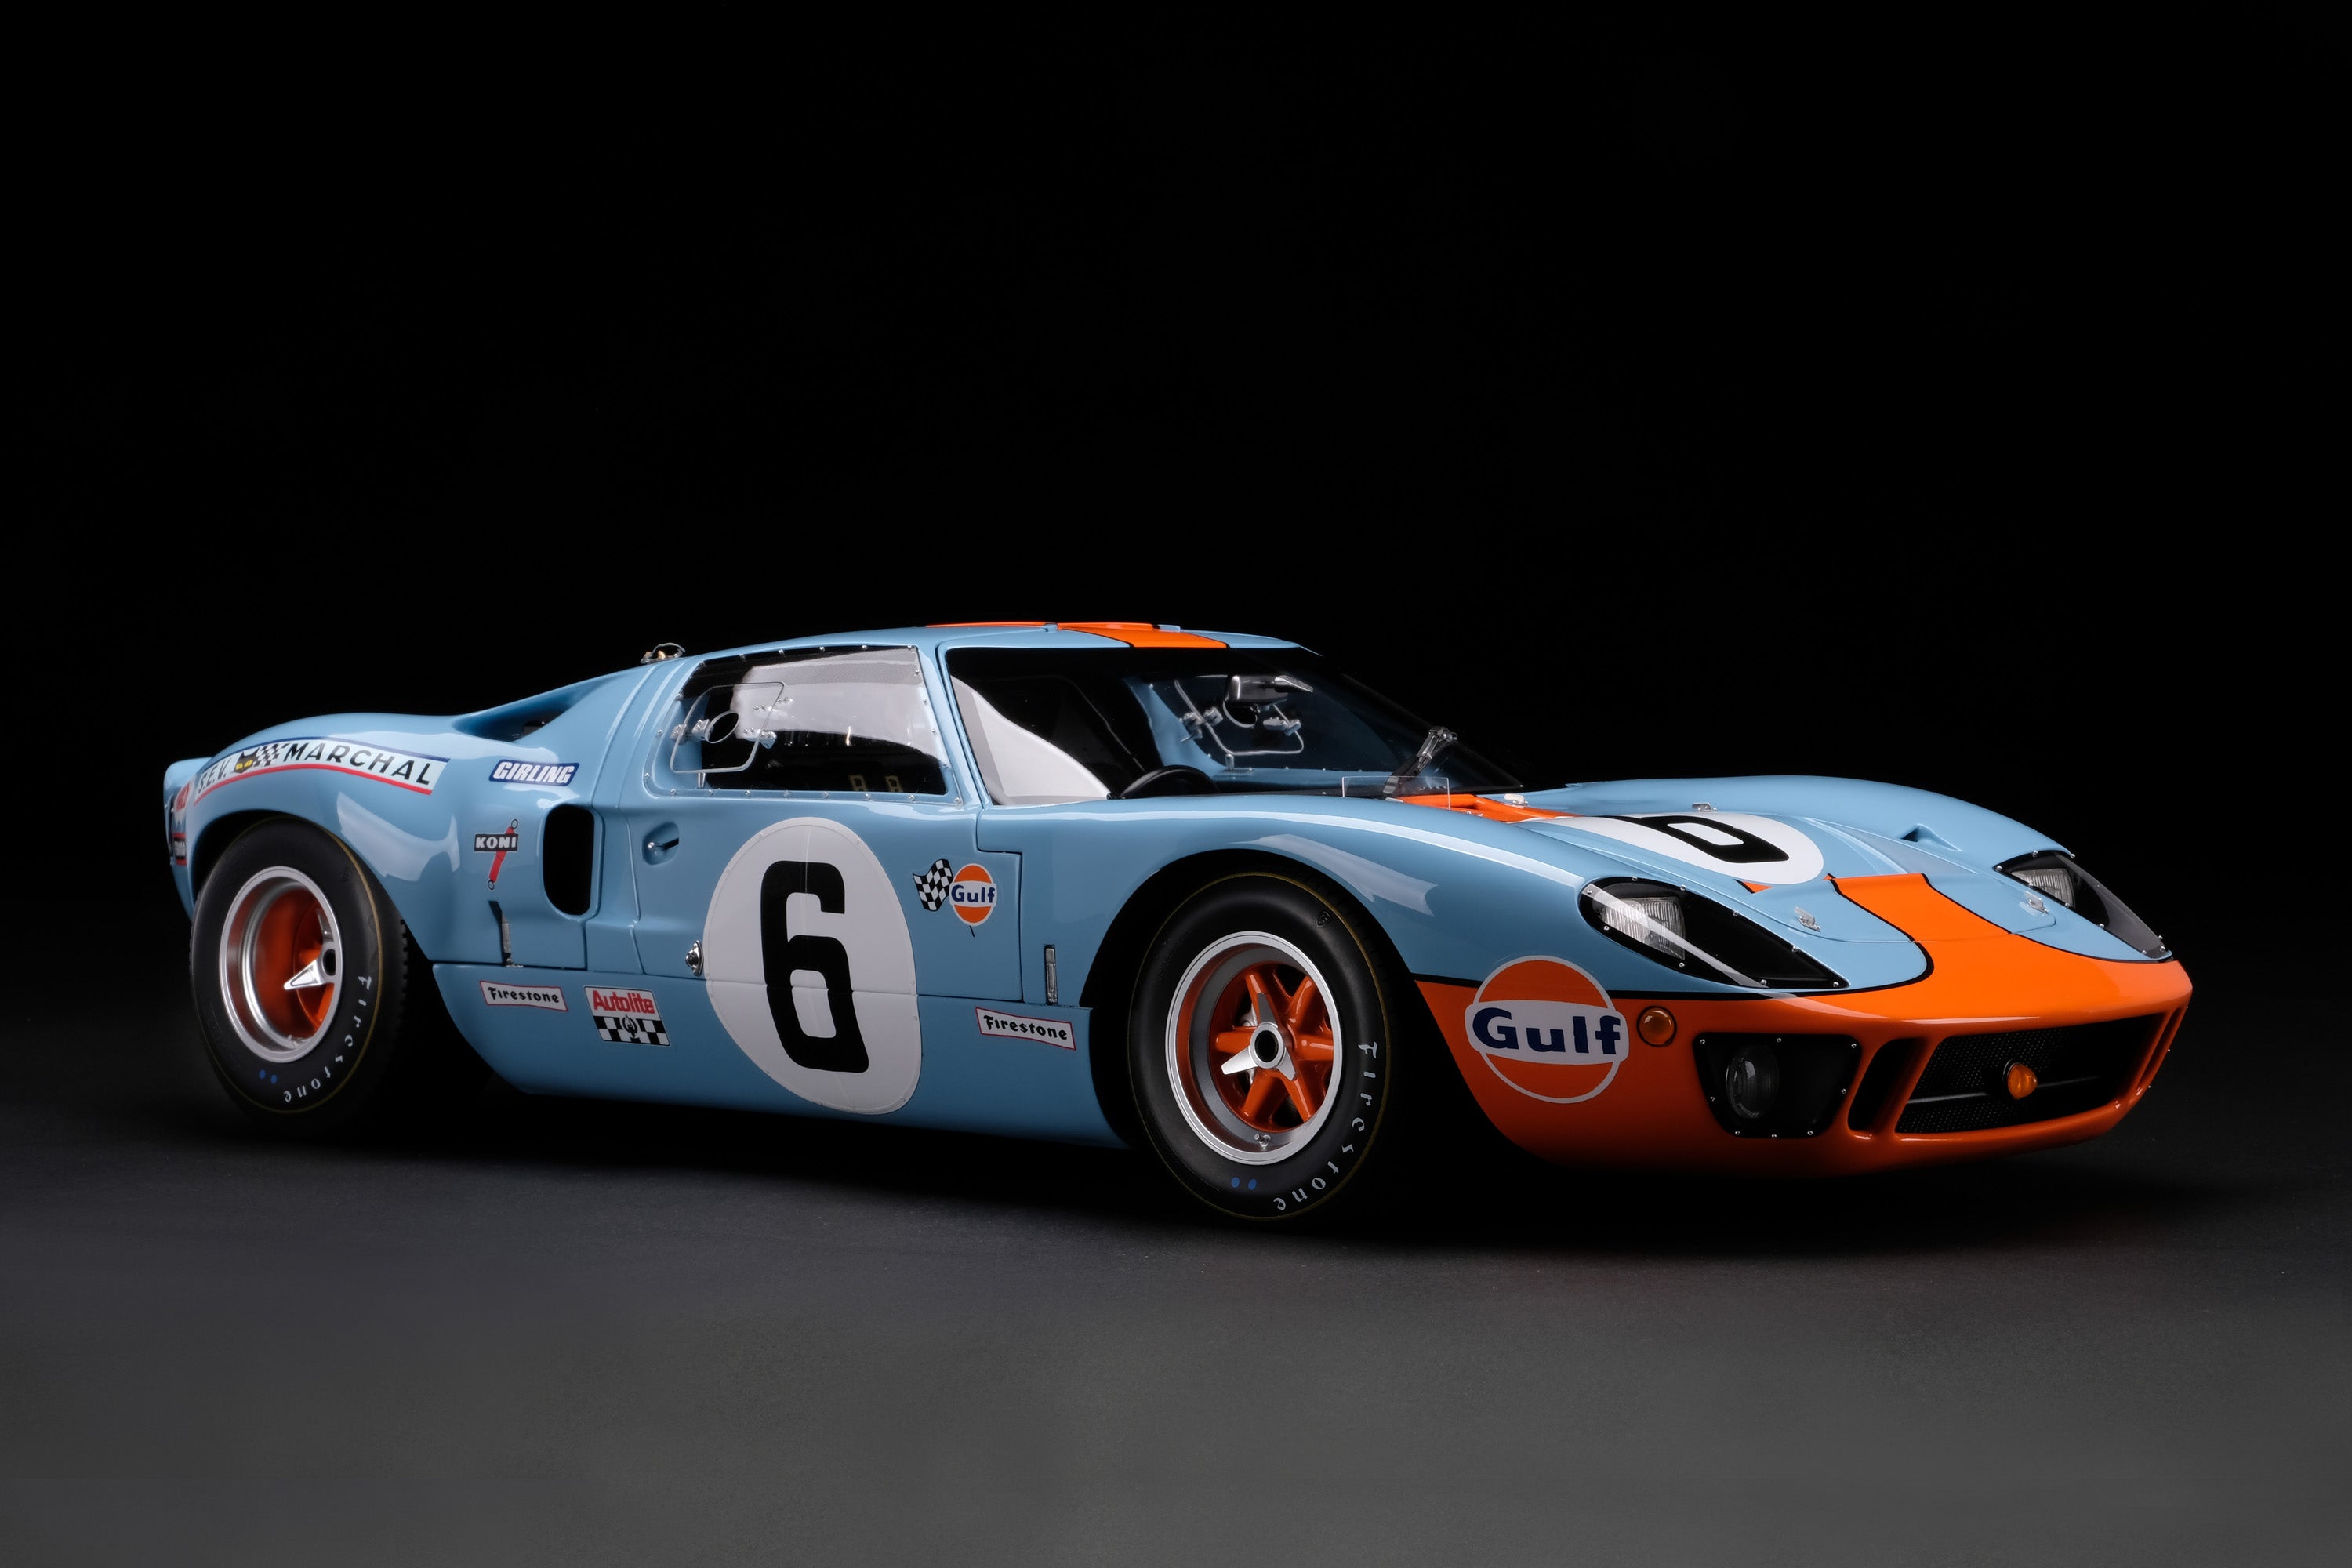 Ford GT40 - 1969 Le Mans Winner